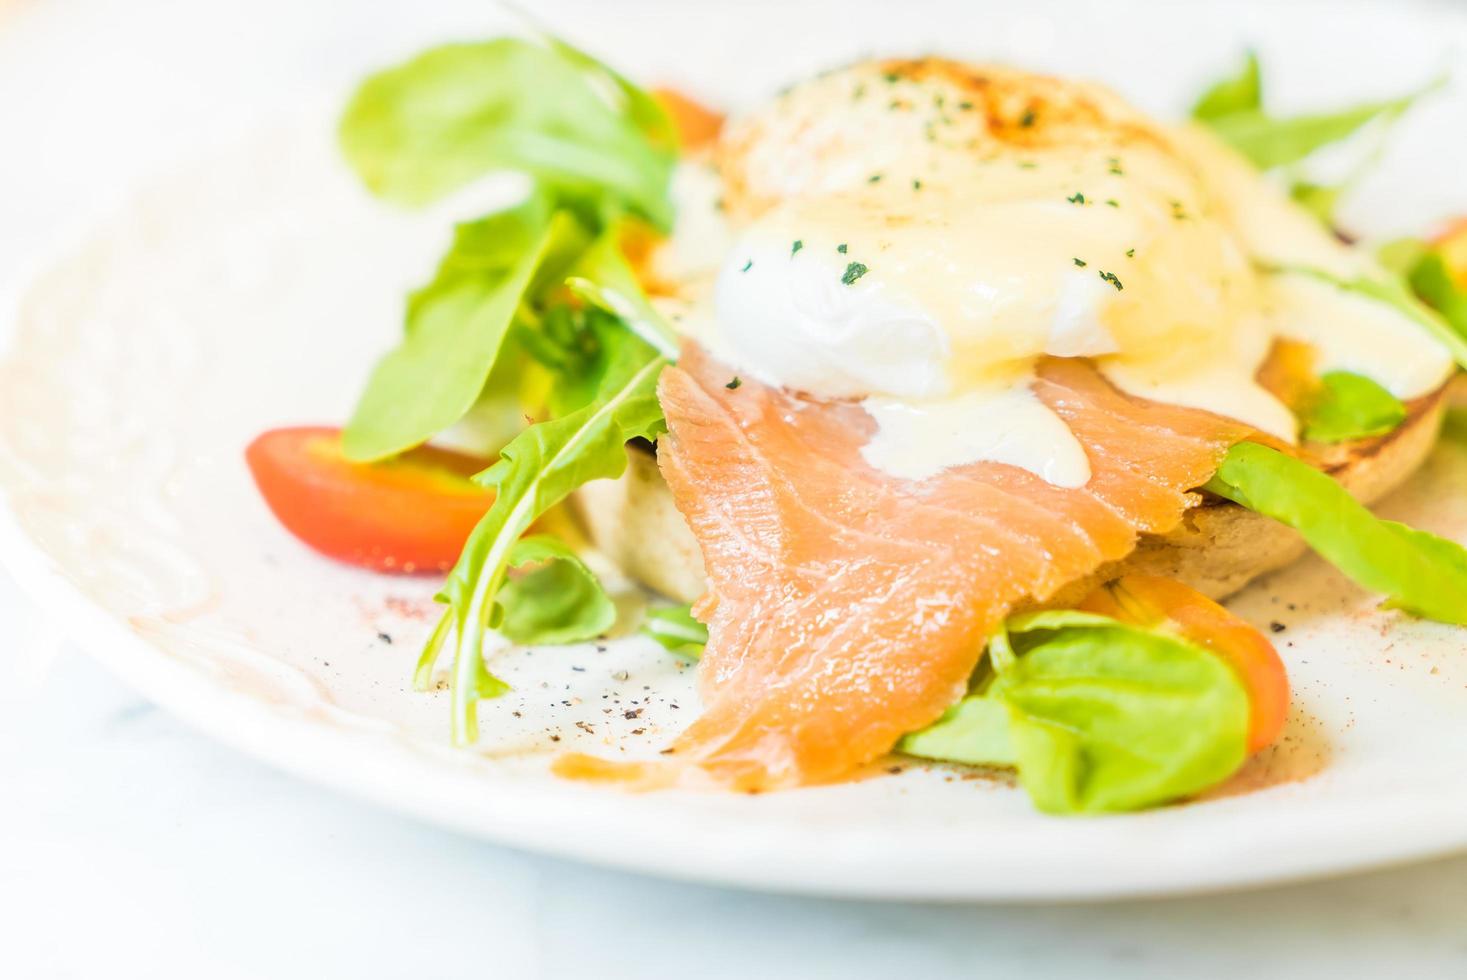 ovos pochê com salmão e salada de rúcula foto